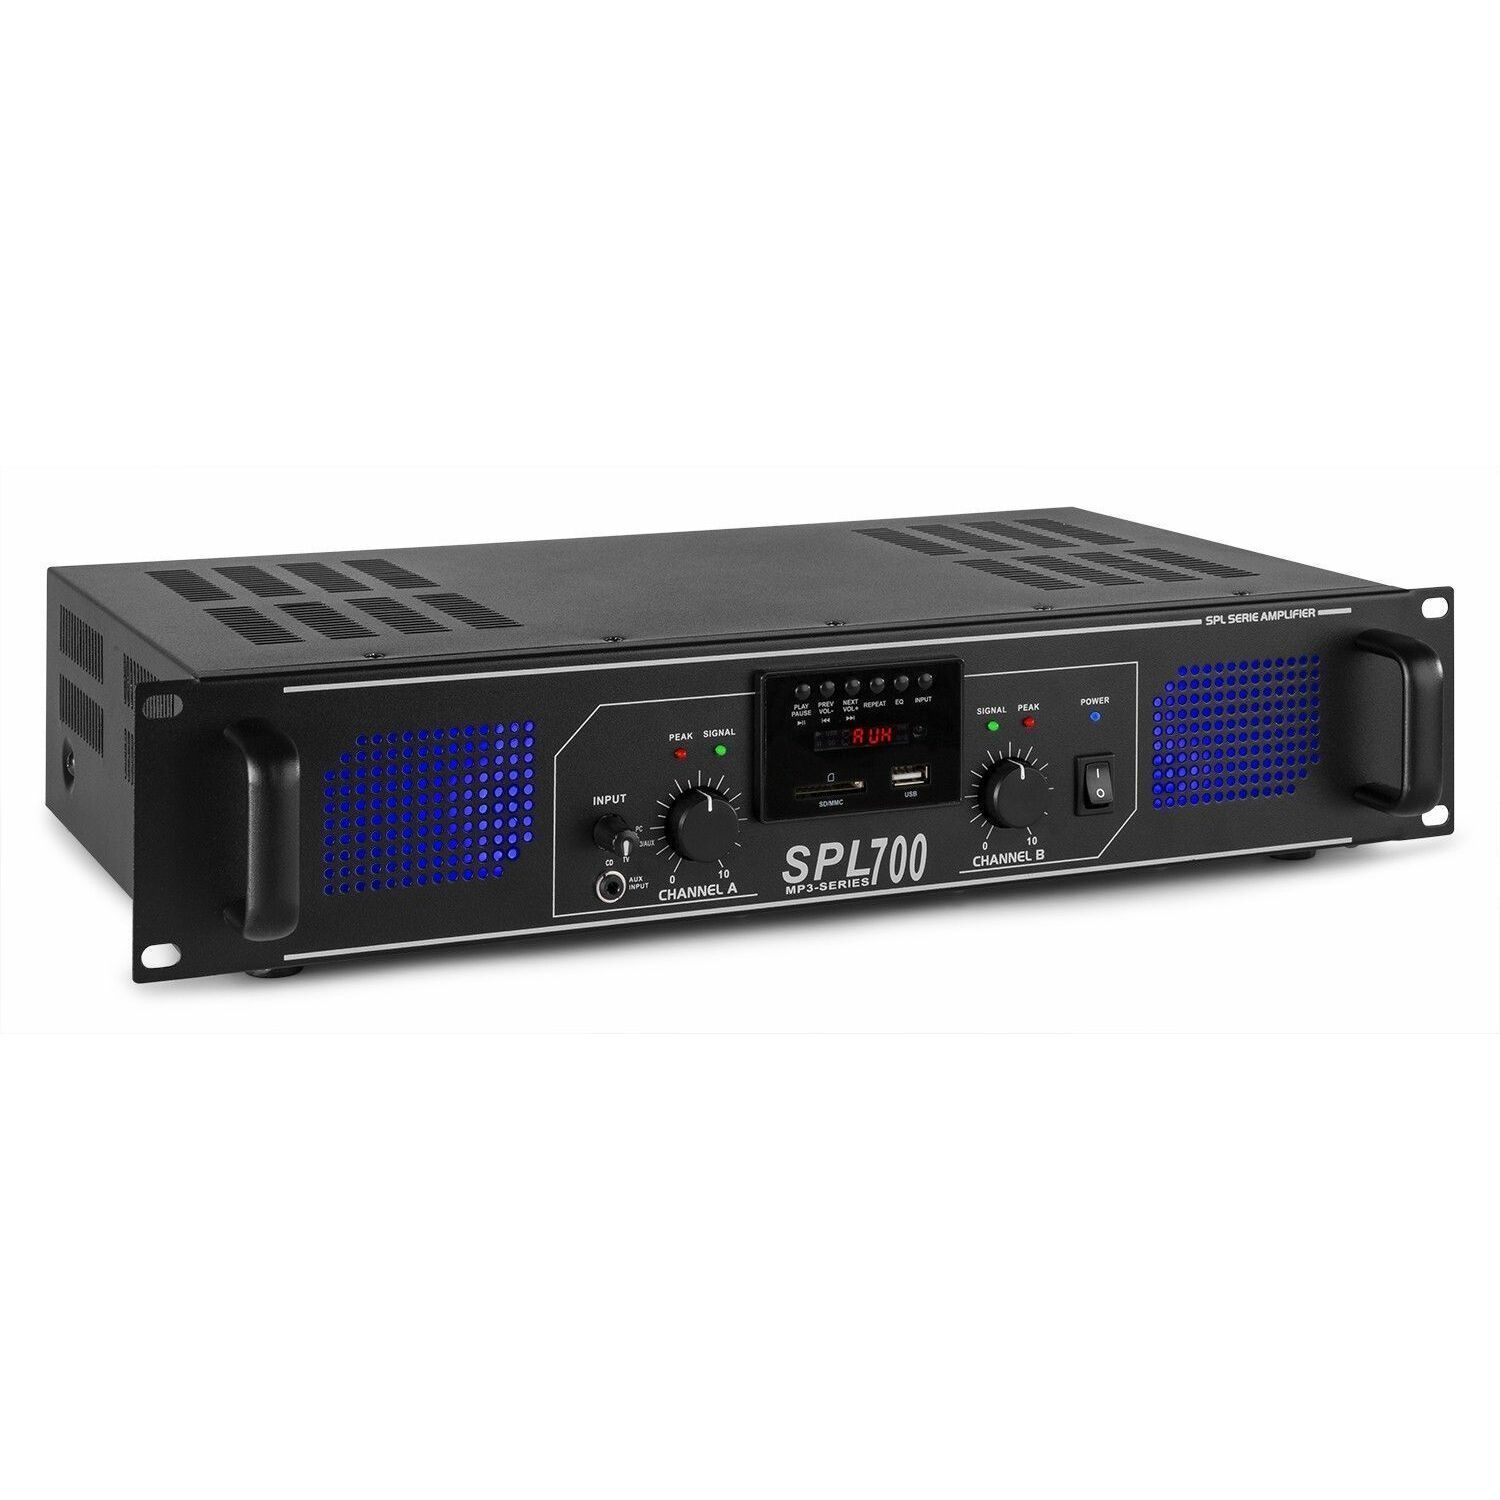 Identiteit Heer handboeien SkyTec 2 x 350W DJ PA versterker SPL700MP3 met USB MP3 speler kopen?